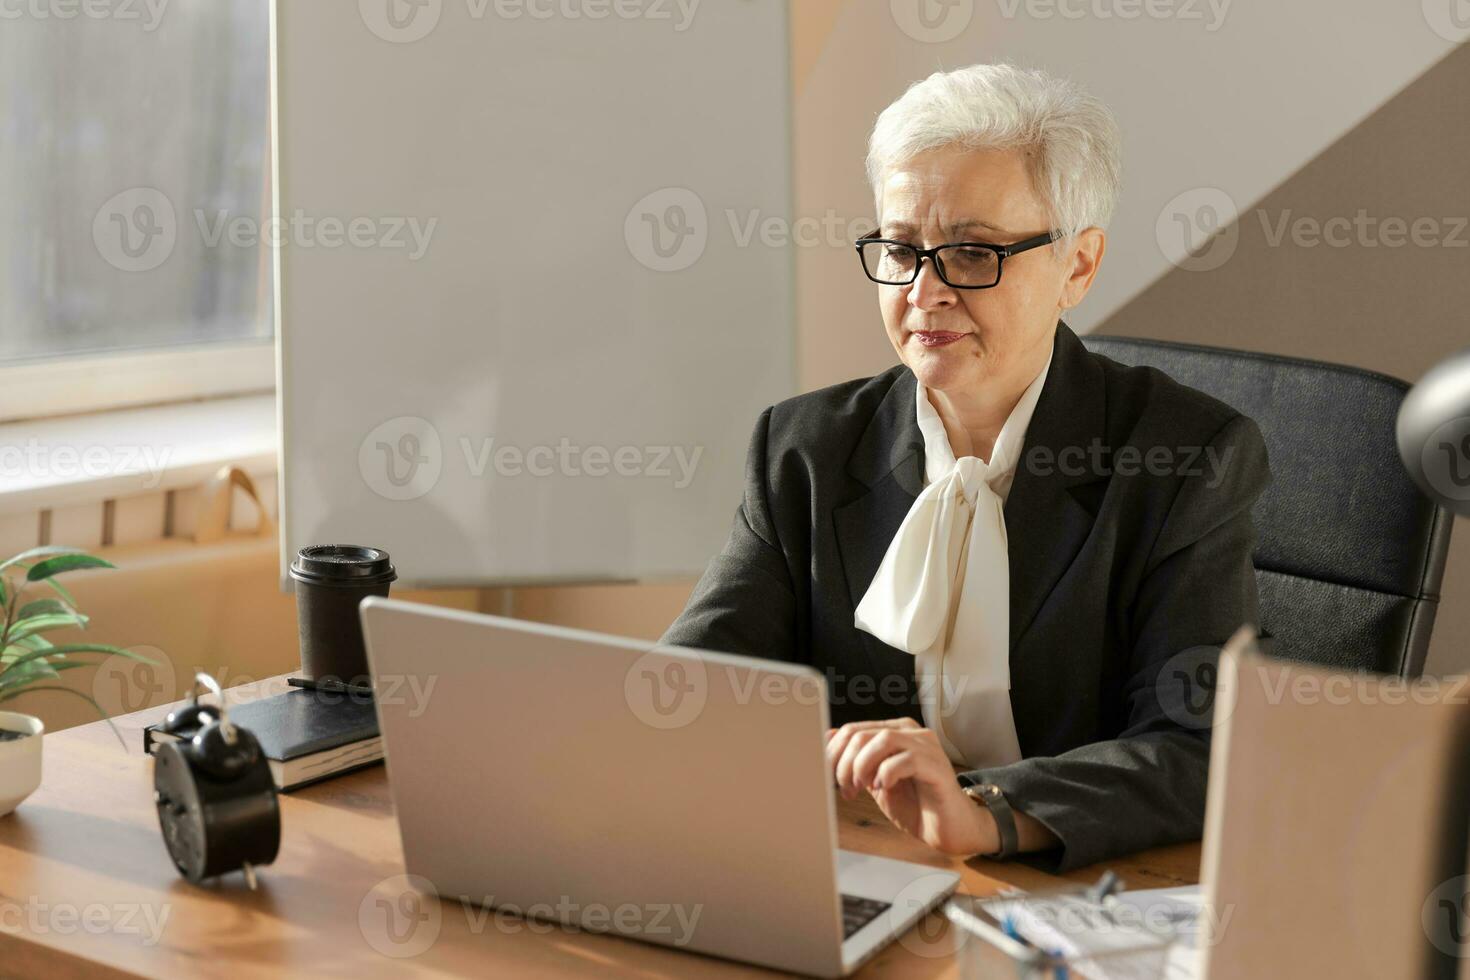 självsäker eleganta europeisk mitten åldrig senior kvinna använder sig av bärbar dator på arbetsplats. eleganta äldre mogna 60s grå håriga lady affärskvinna Sammanträde på kontor tabell. chef ledare lärare professionell arbetstagare. foto